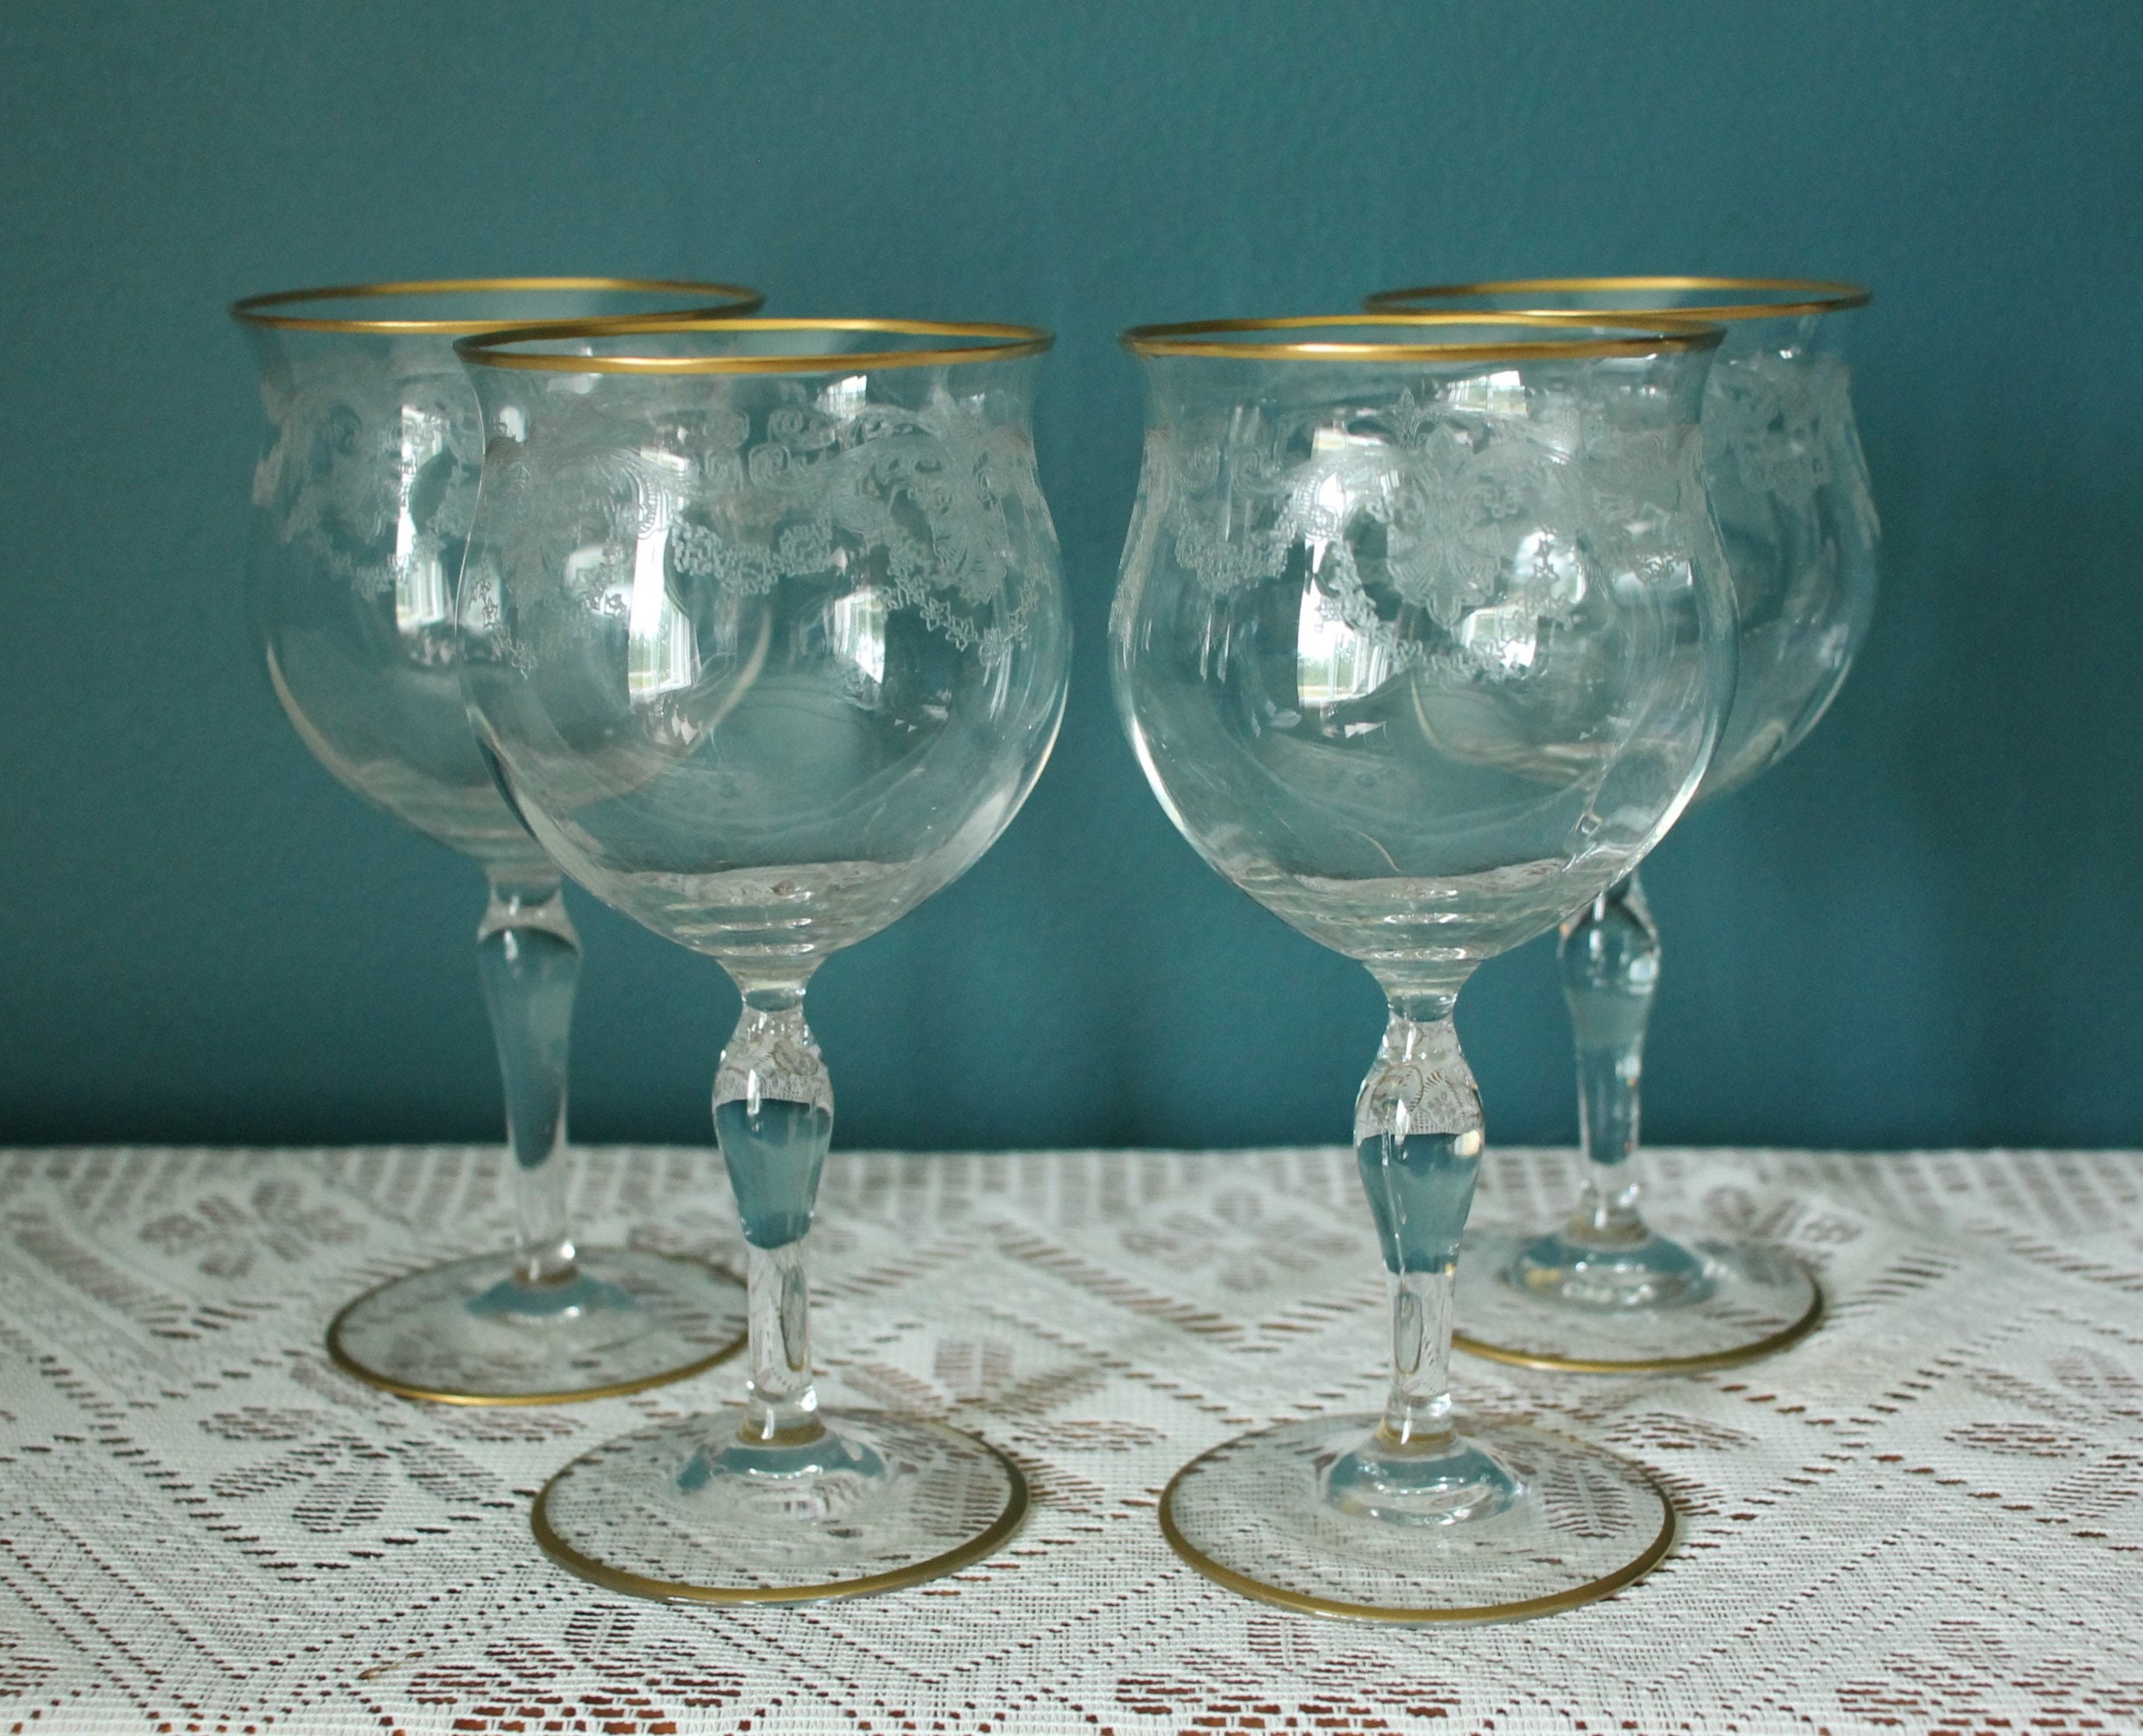 2 Antique Etched Optic Wine Glasses, Circa 1920's, Antique Wine